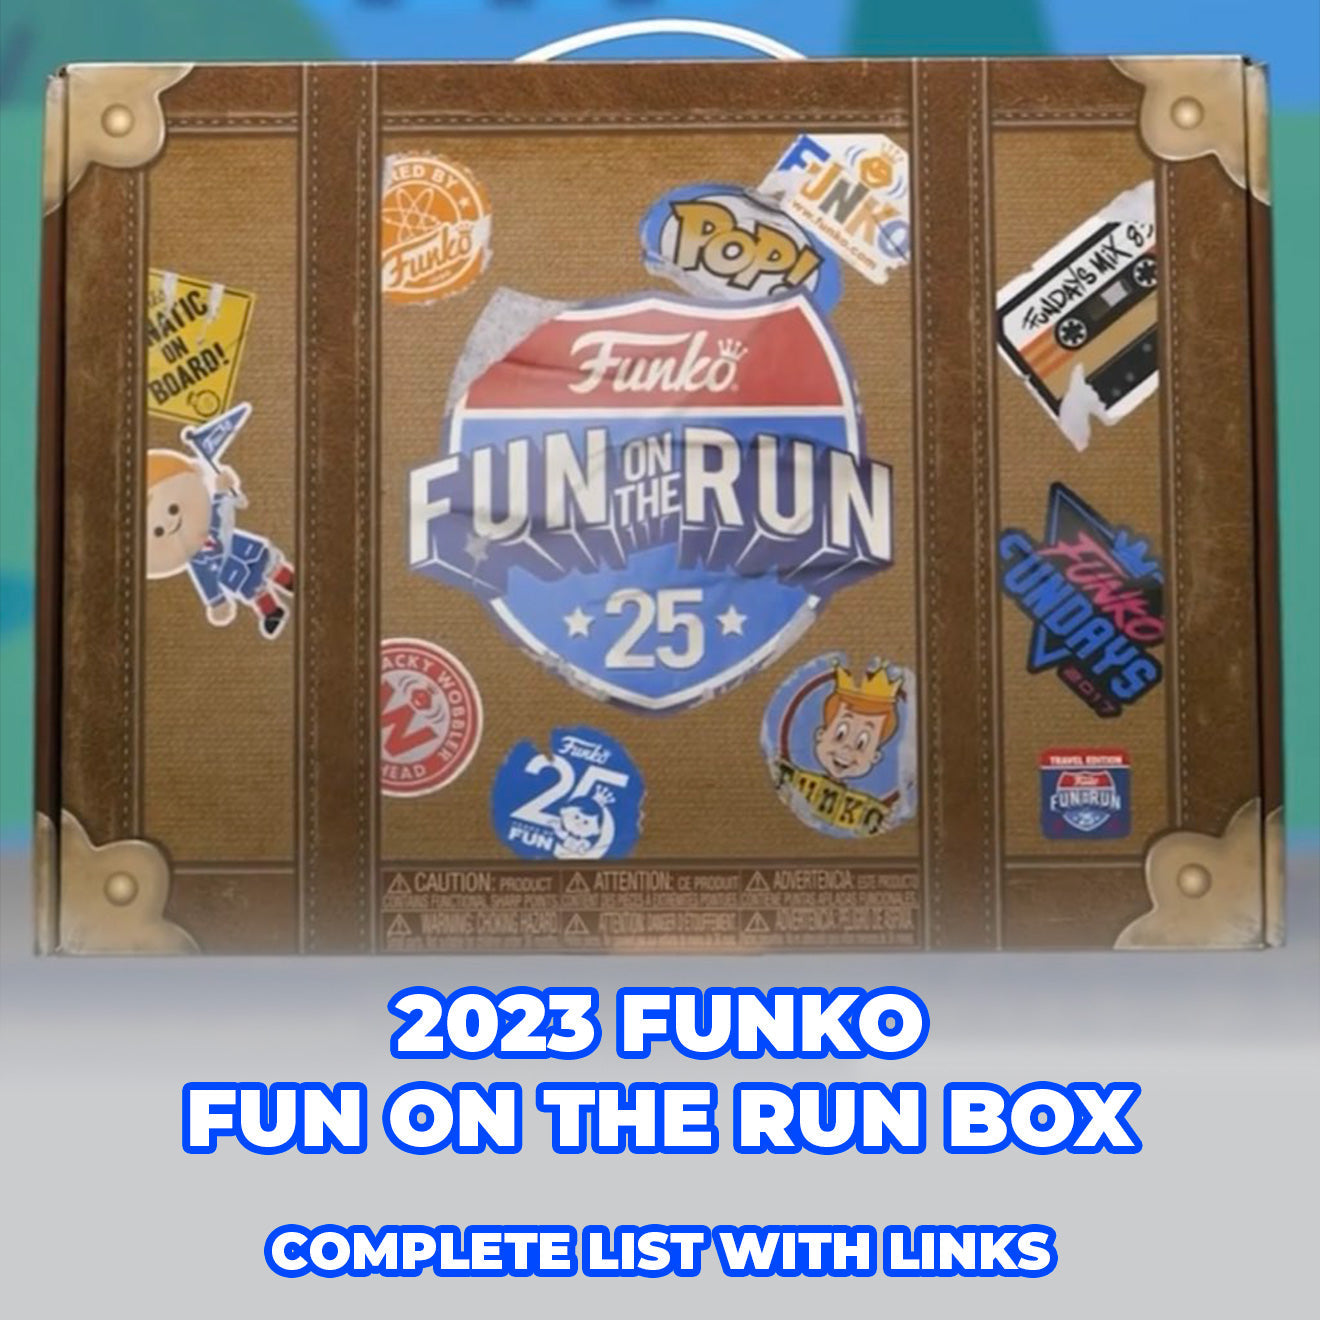 Buy Pop! Fun on the Run Freddy Funko at Funko.